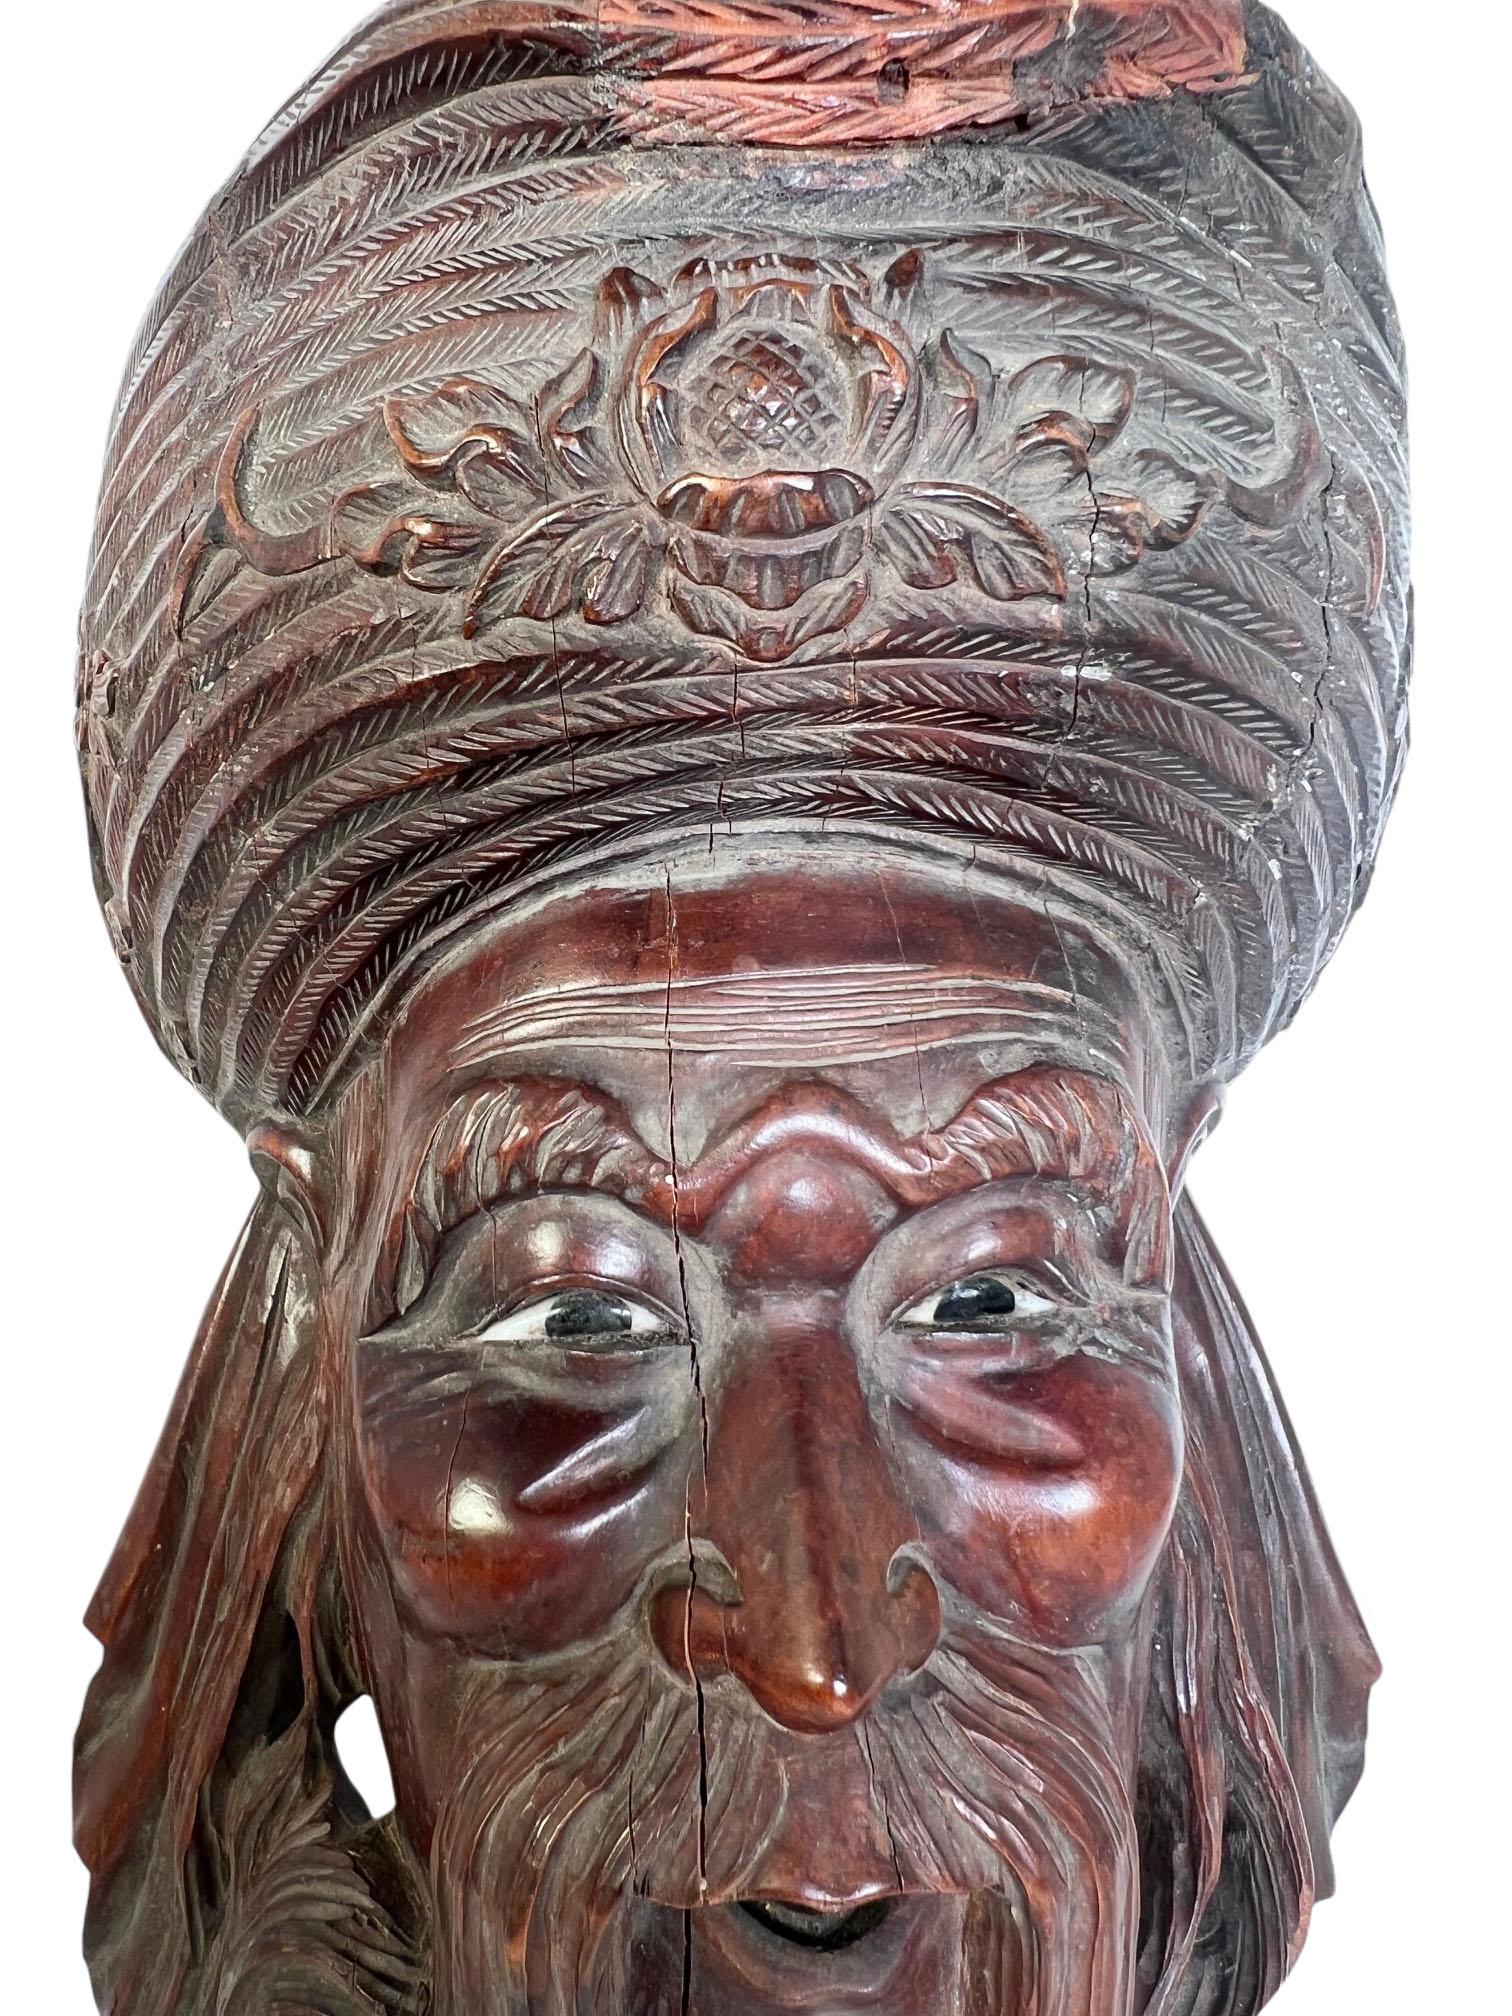 Chinesische geschnitzte Holz Kaiser mit Knochen geschnitzt Augen. Geschnitzte Holzrestauration auf der Hutoberseite und einige altersbedingte Risse im Holz.